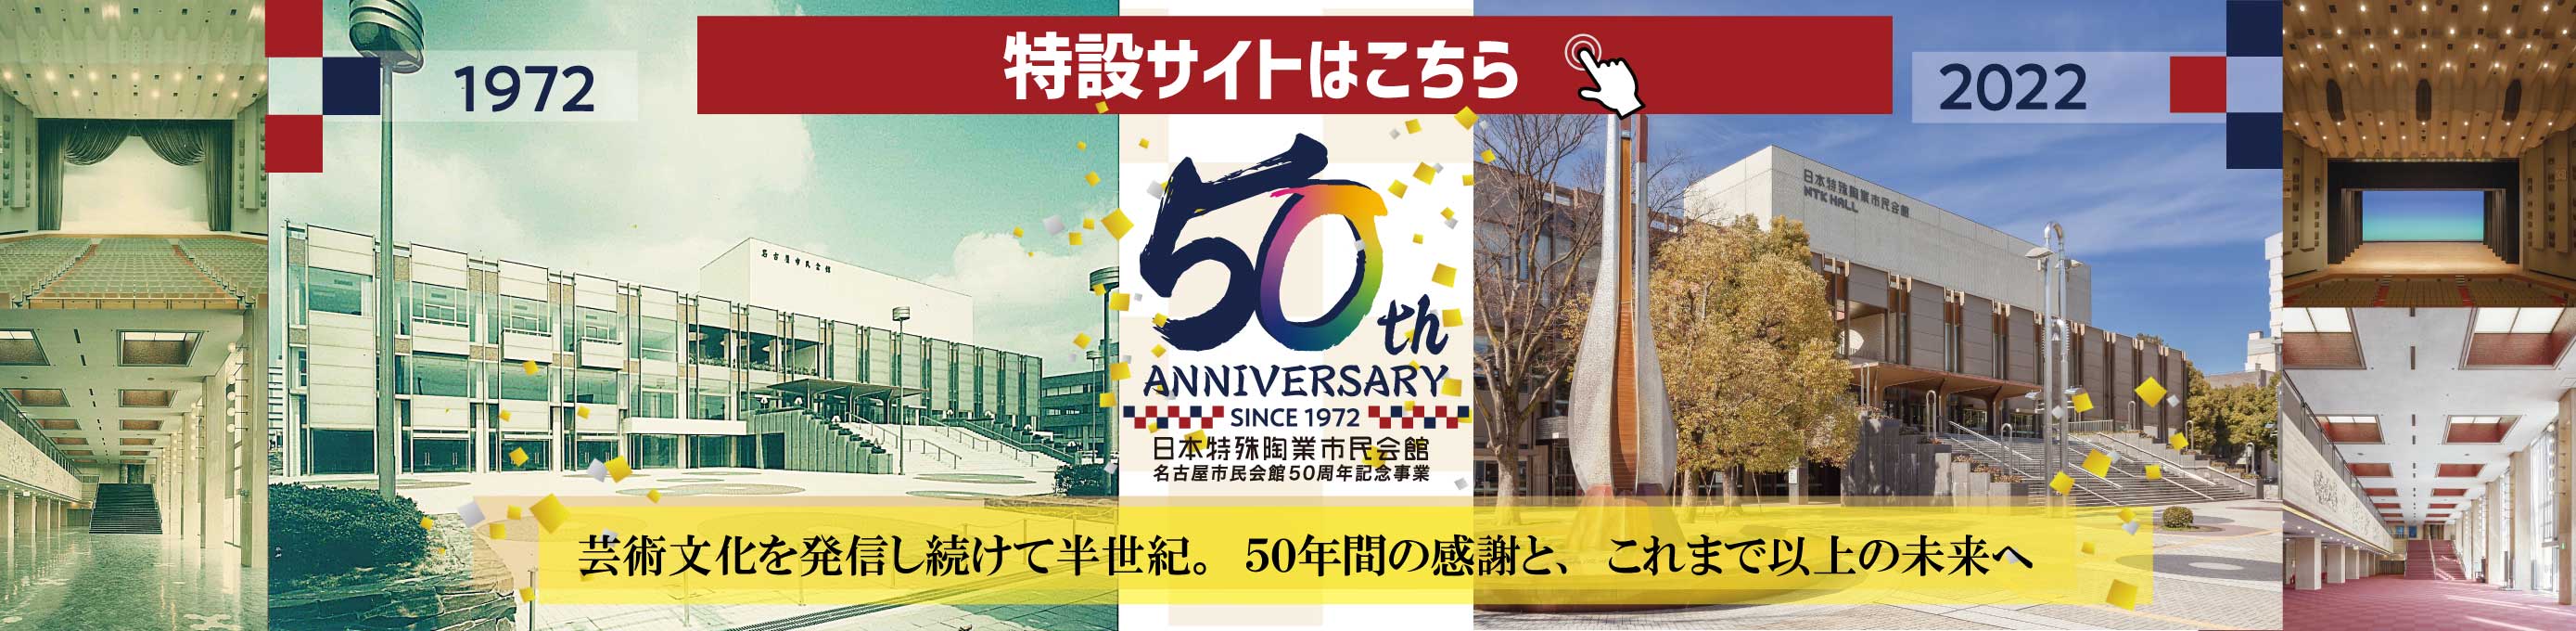 市民会館50周年記念特設サイト リンクバナー